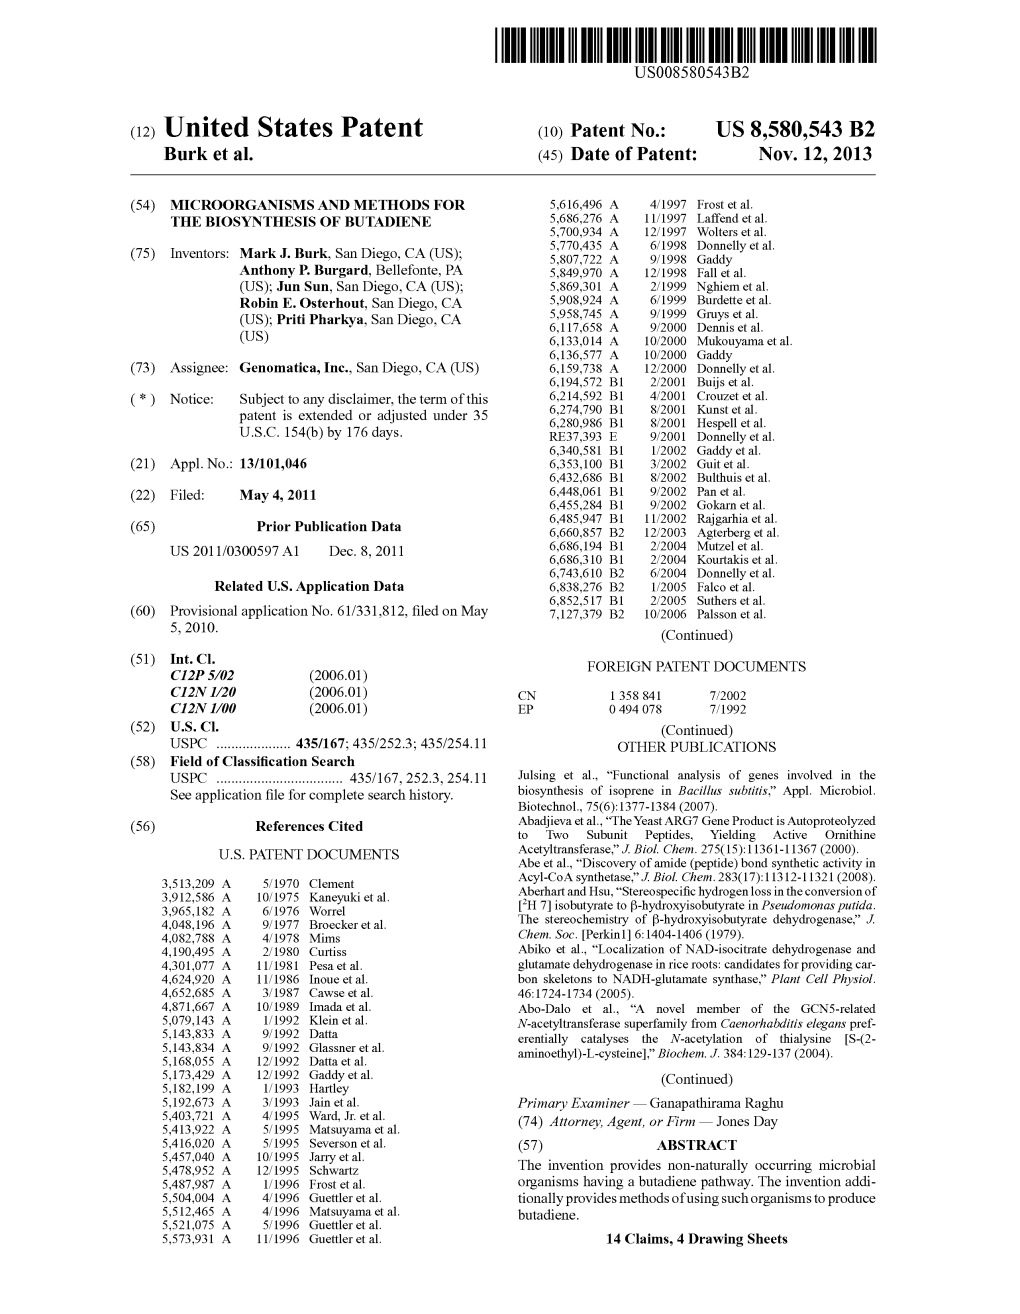 (12) United States Patent (10) Patent No.: US 8,580,543 B2 Burk Et Al